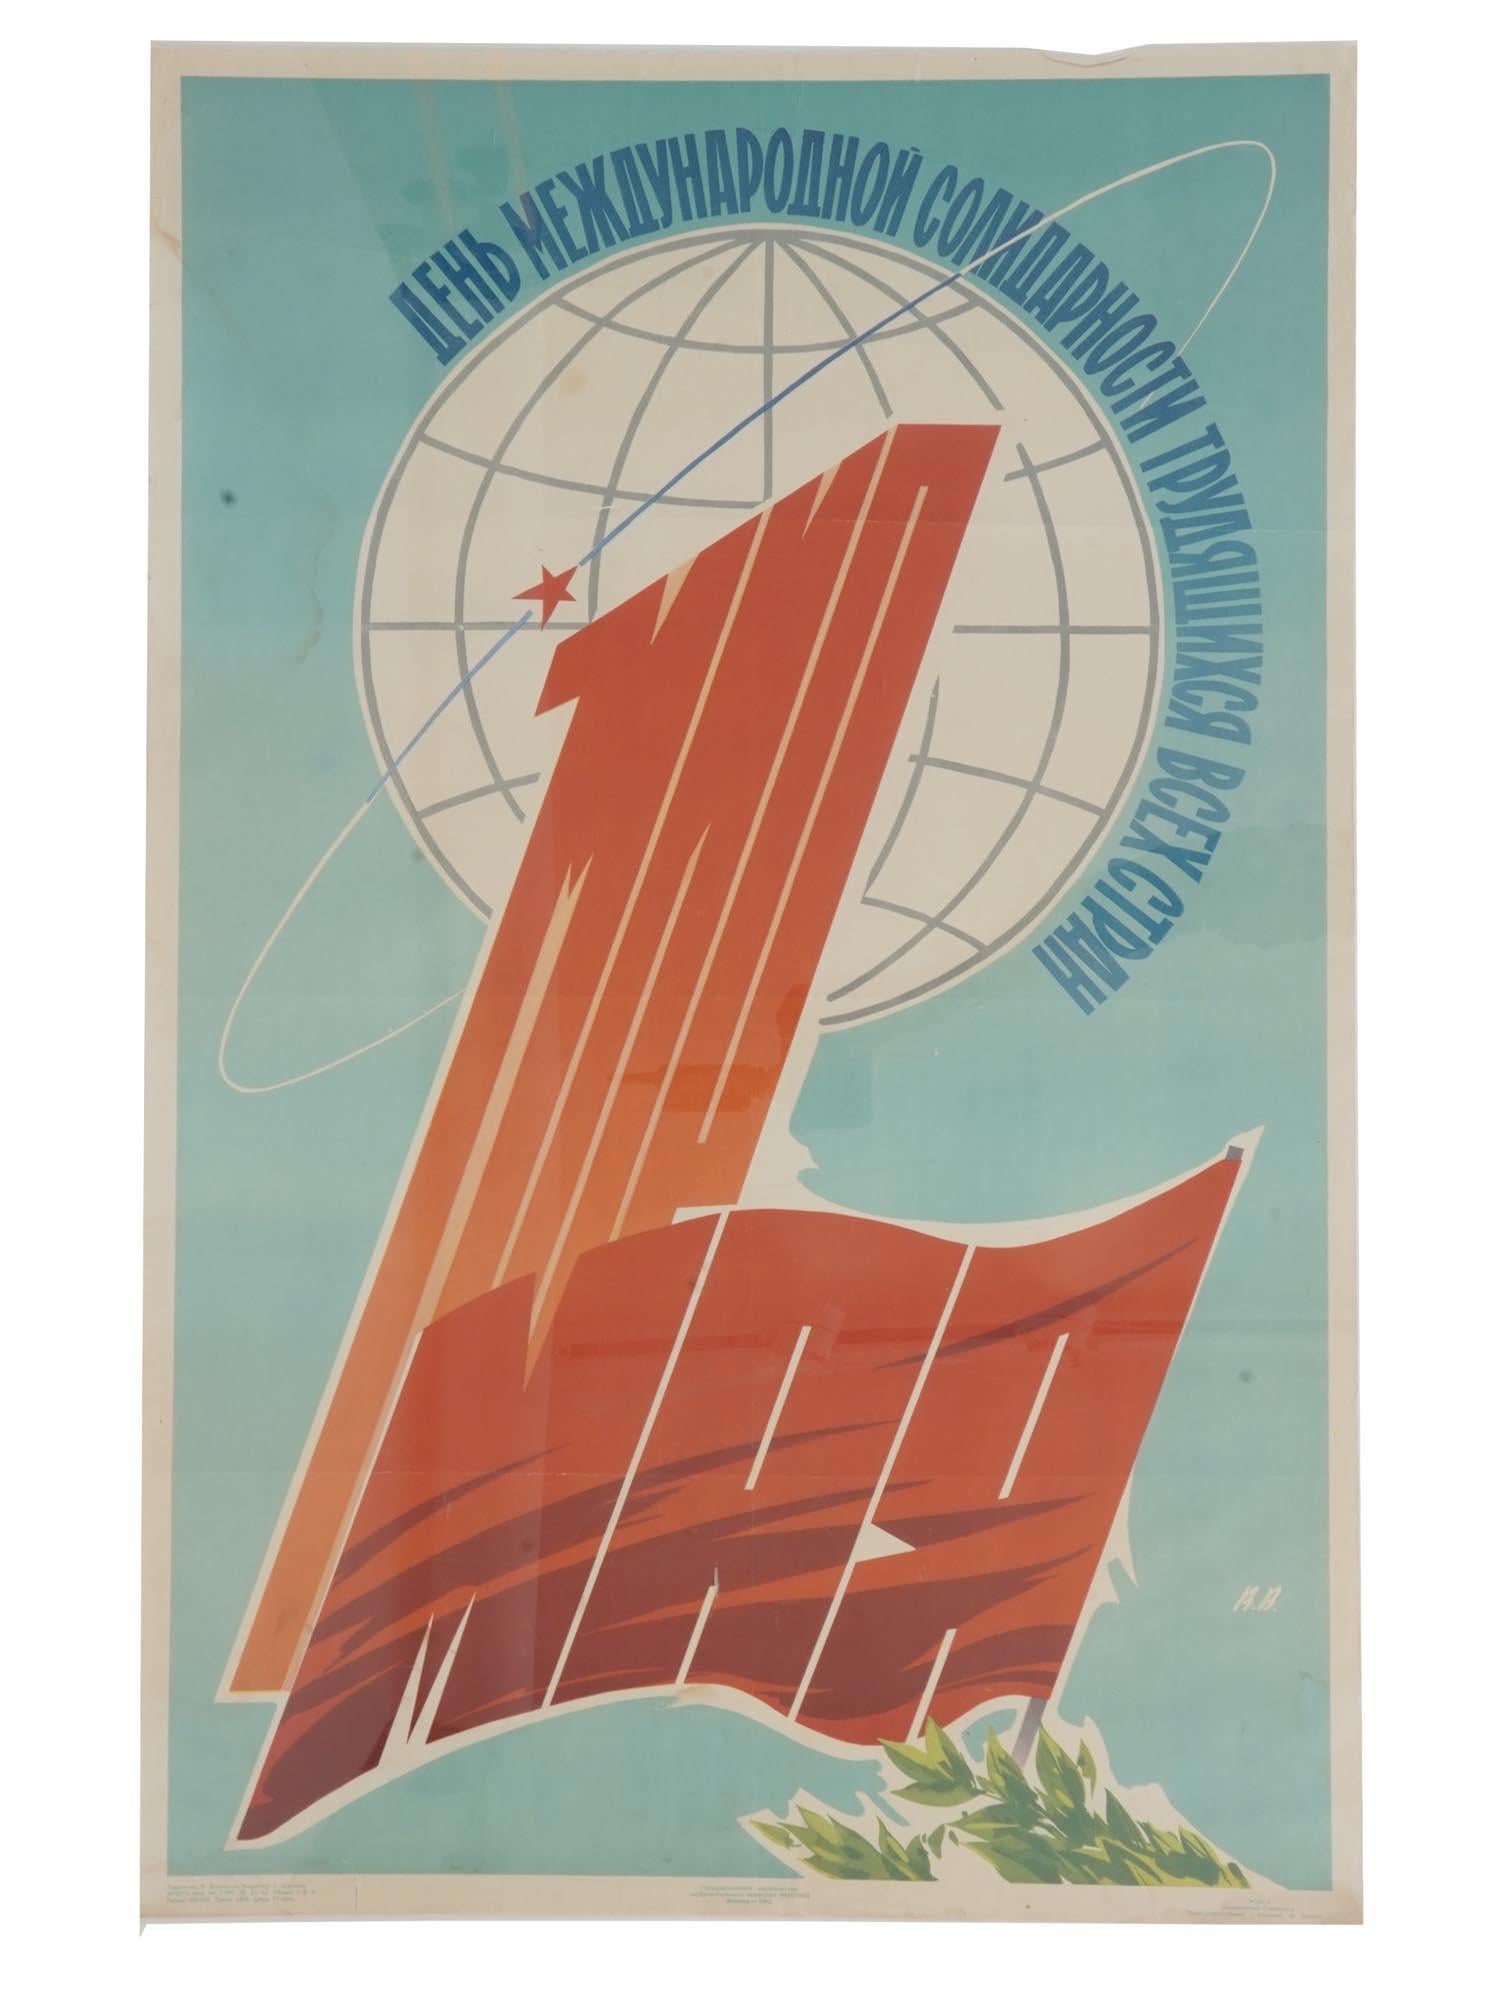 Description
Affiche soviétique 